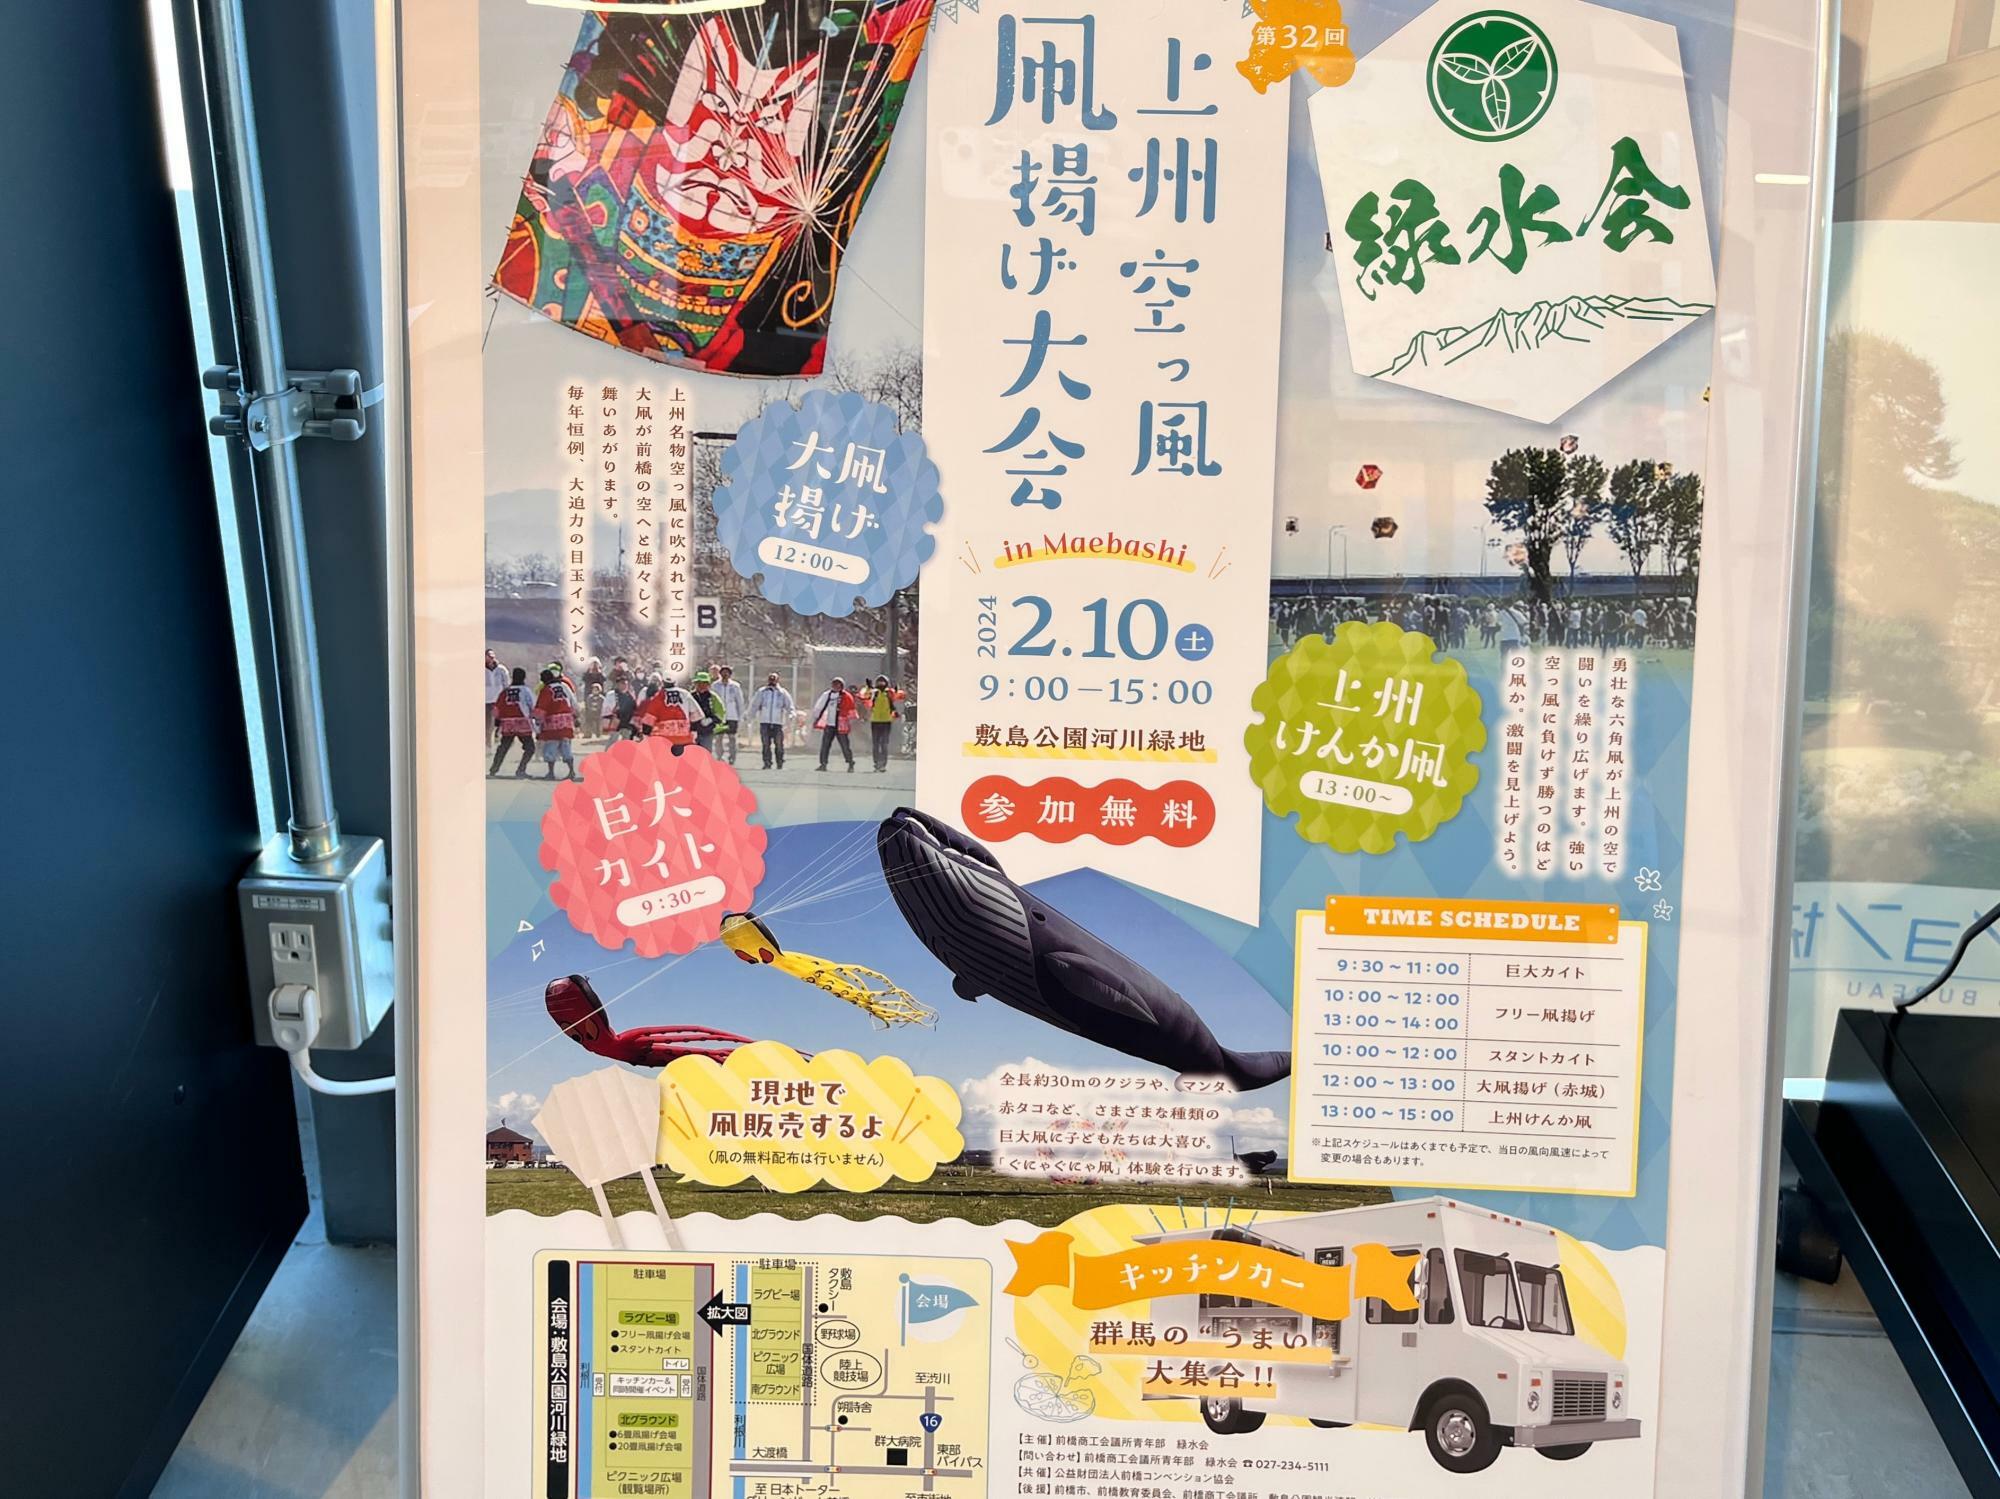 「上州空っ風 凧揚げ大会」開催告知のポスター